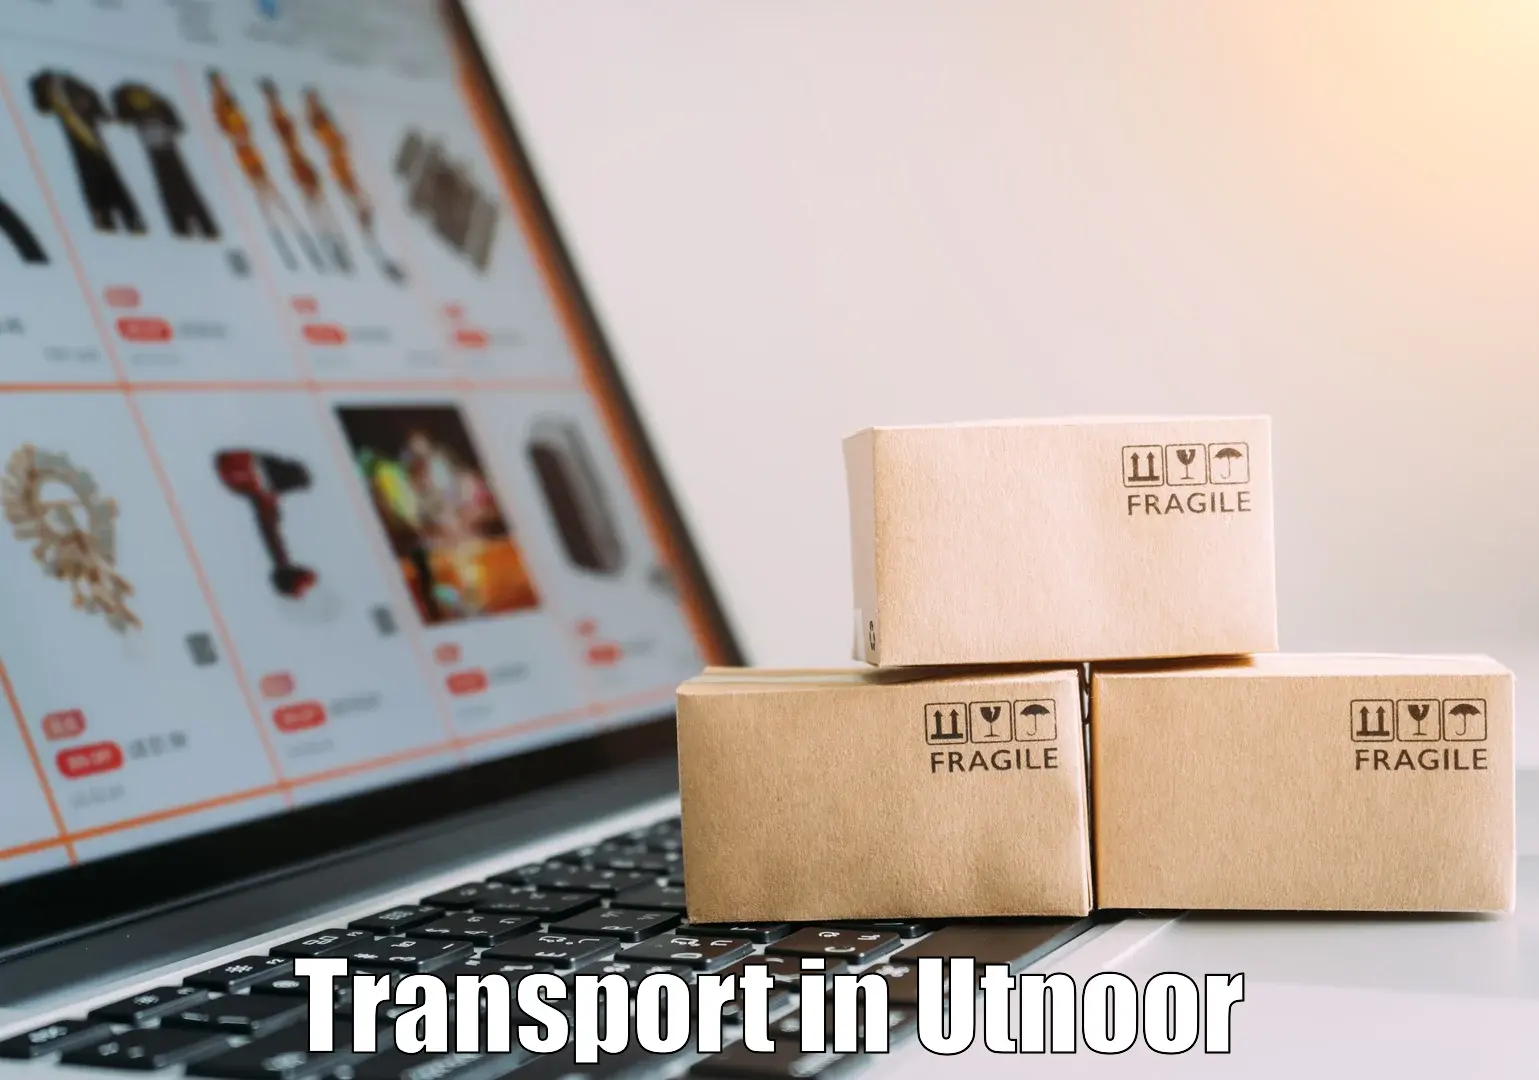 Road transport online services in Utnoor